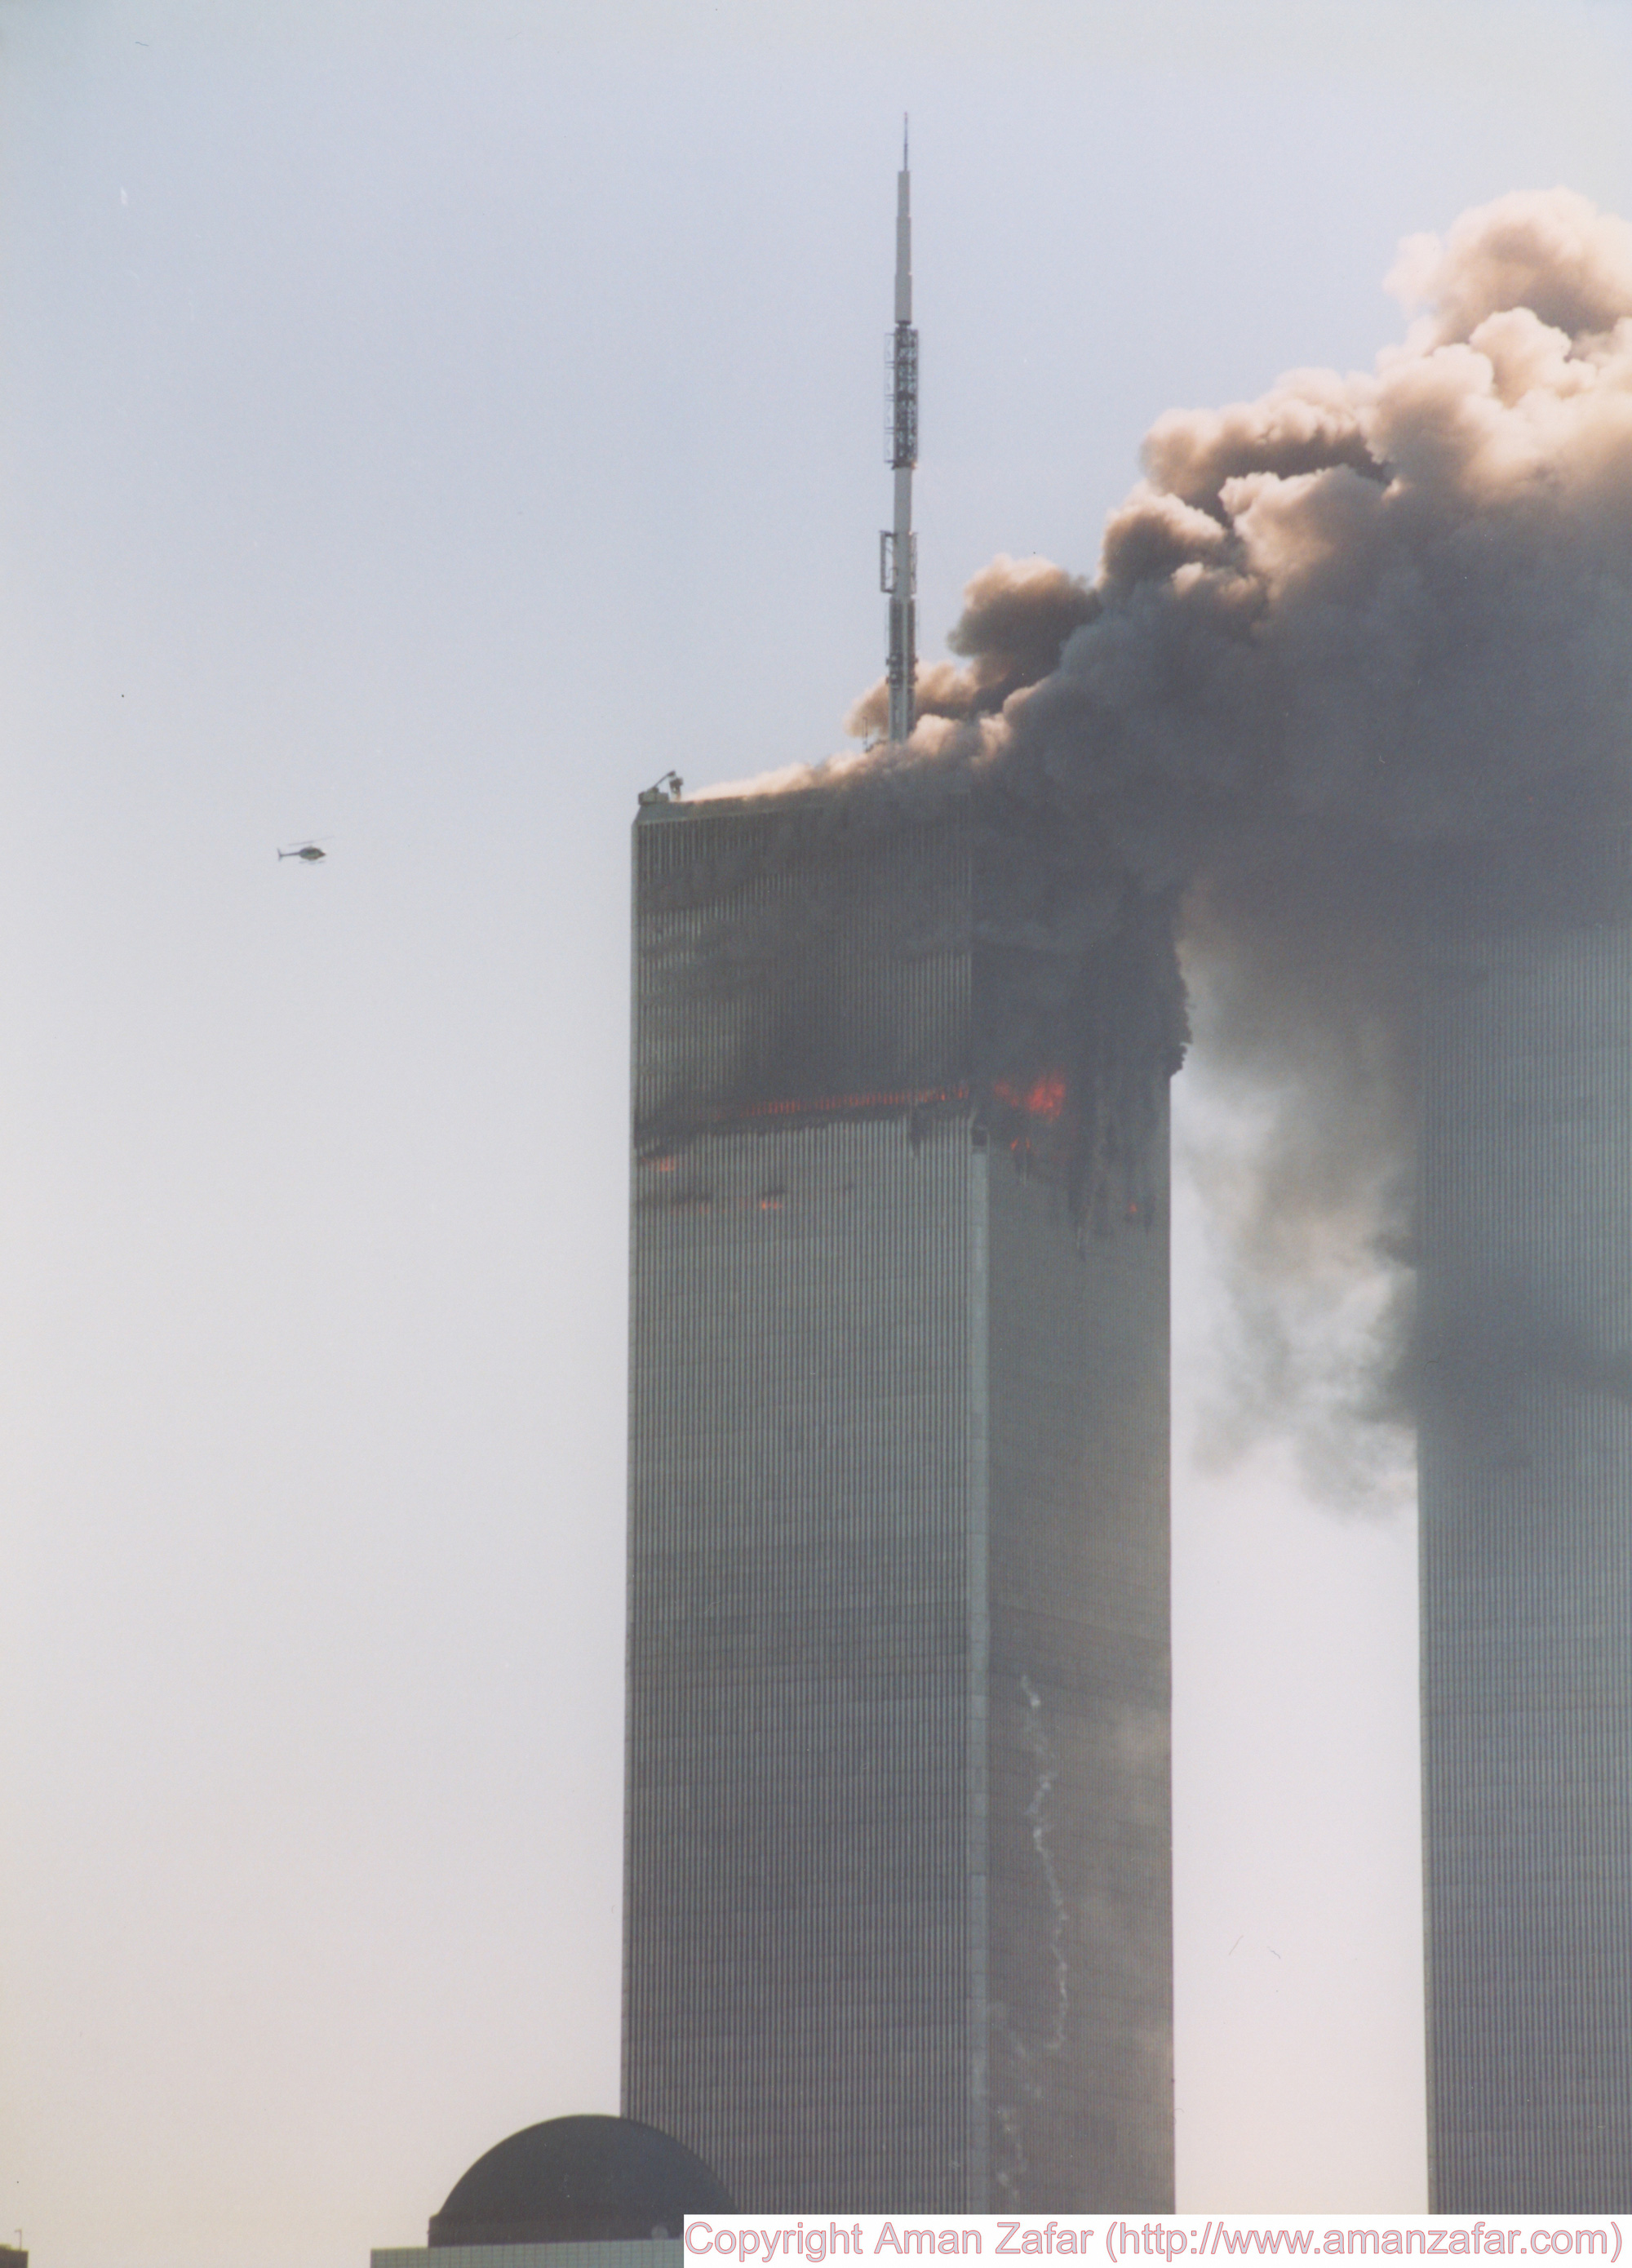 Khoảnh khắc yên bình của Trung tâm Thương mại Thế giới trước vụ khủng bố 11/9 nằm lại trong ký ức của người Mỹ - Ảnh 12.